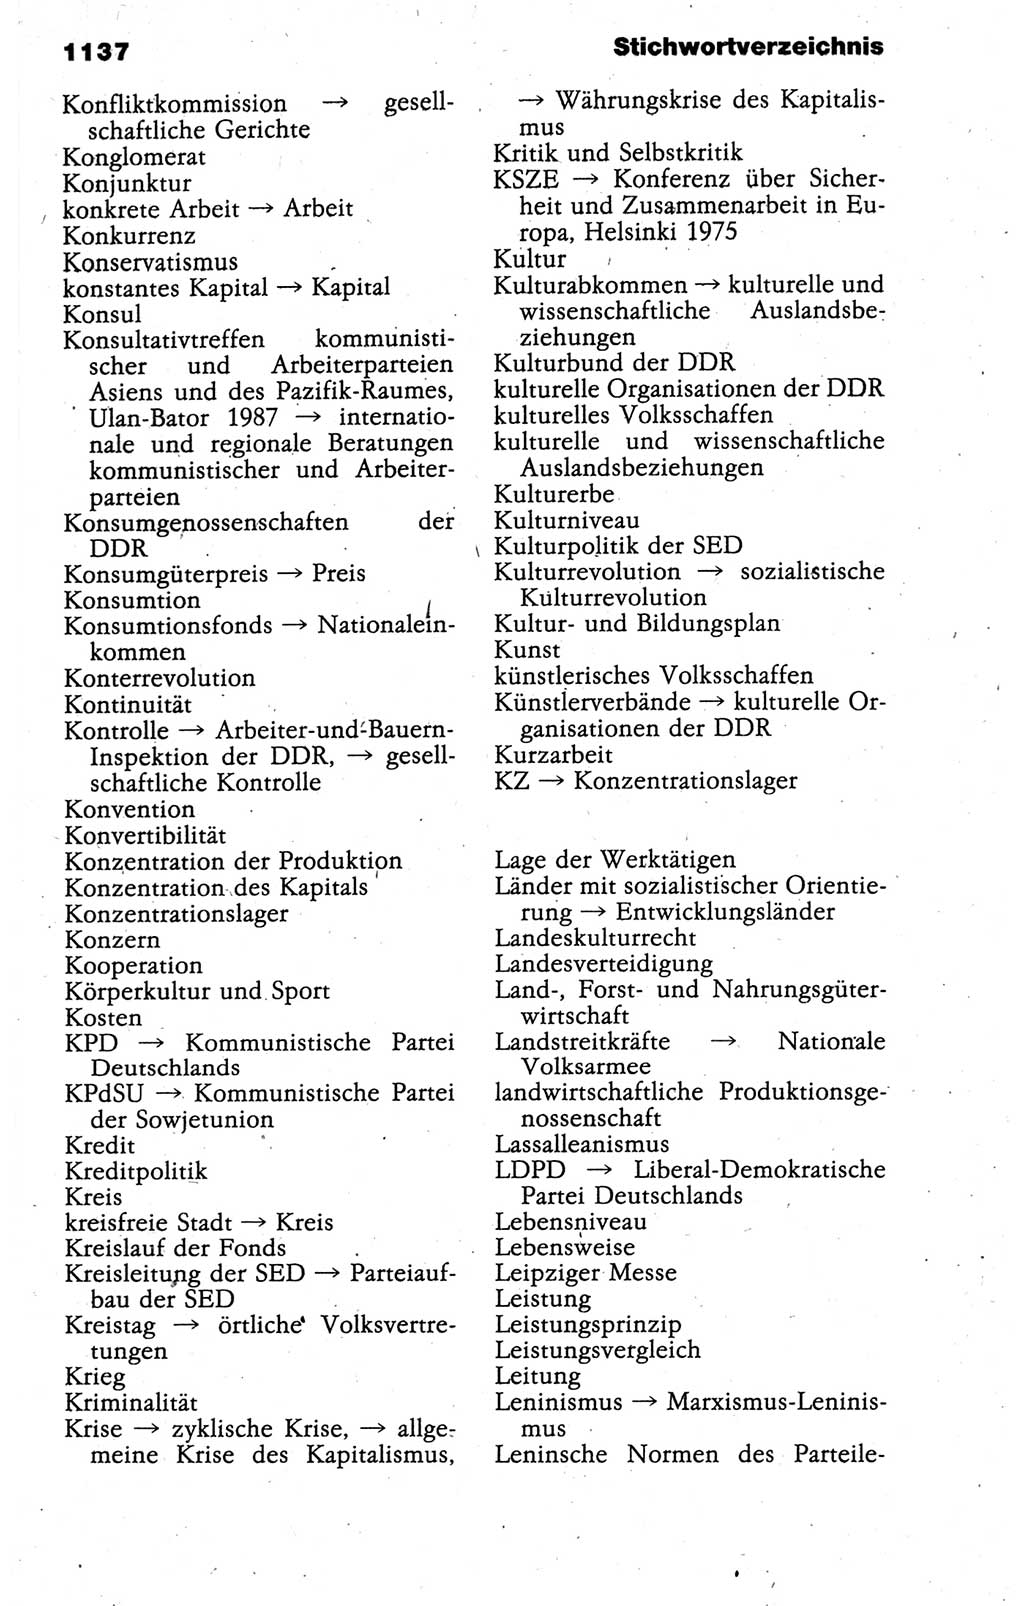 Kleines politisches Wörterbuch [Deutsche Demokratische Republik (DDR)] 1988, Seite 1137 (Kl. pol. Wb. DDR 1988, S. 1137)